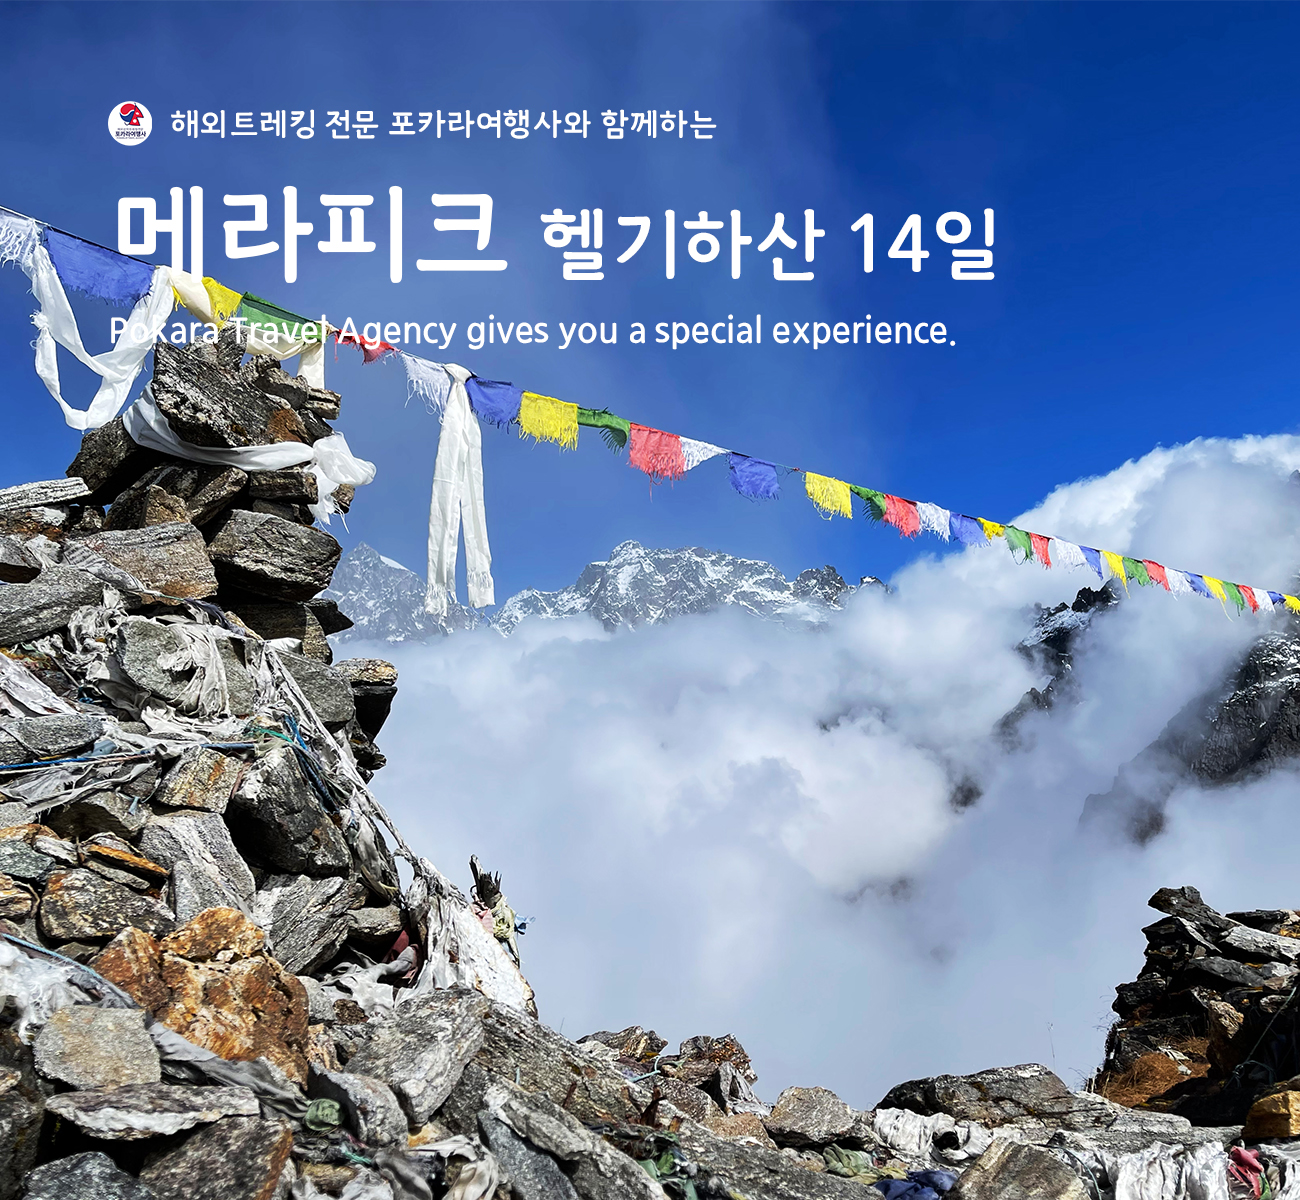 「소그룹/단체」메라피크(Mera Peak)헬기하산 14일